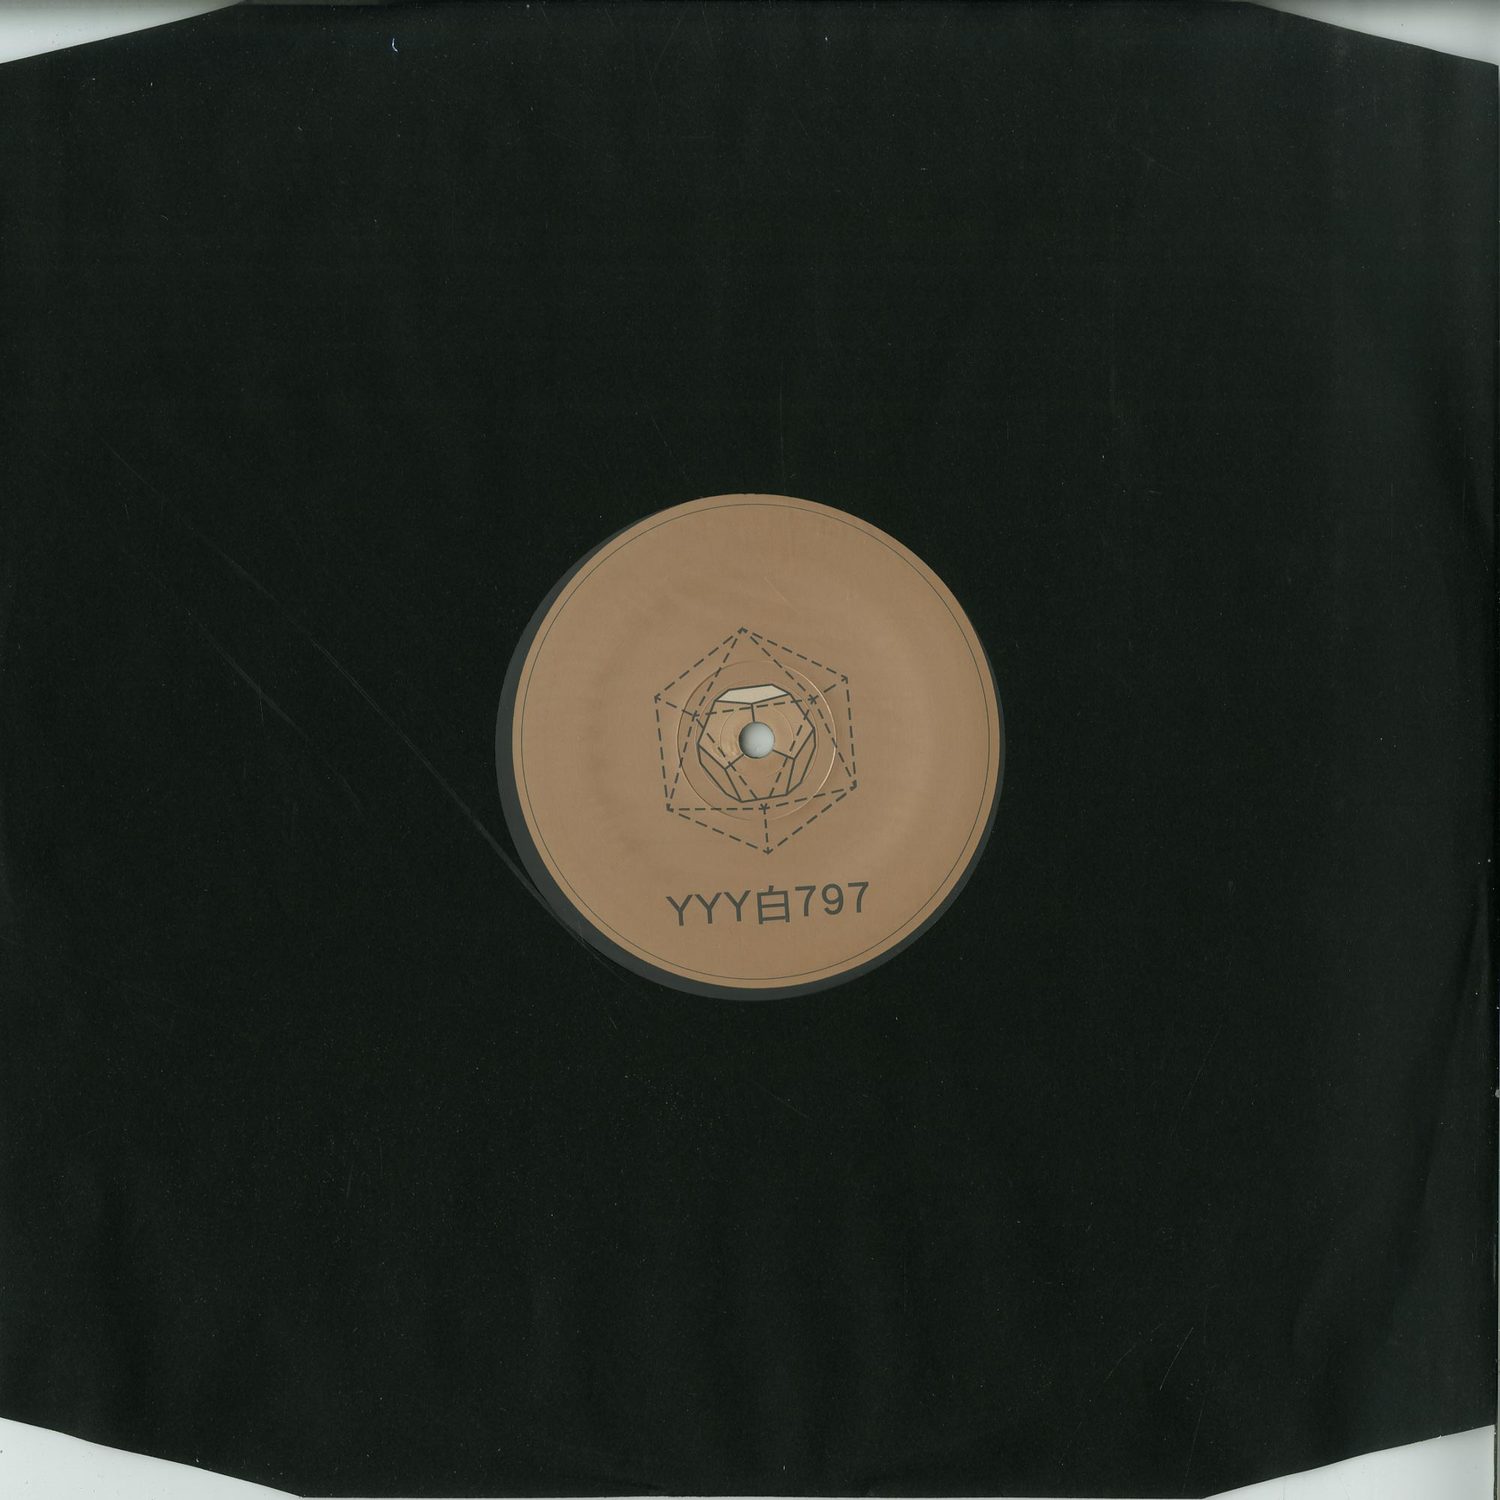 YYY - yyy797 (vinyl only)